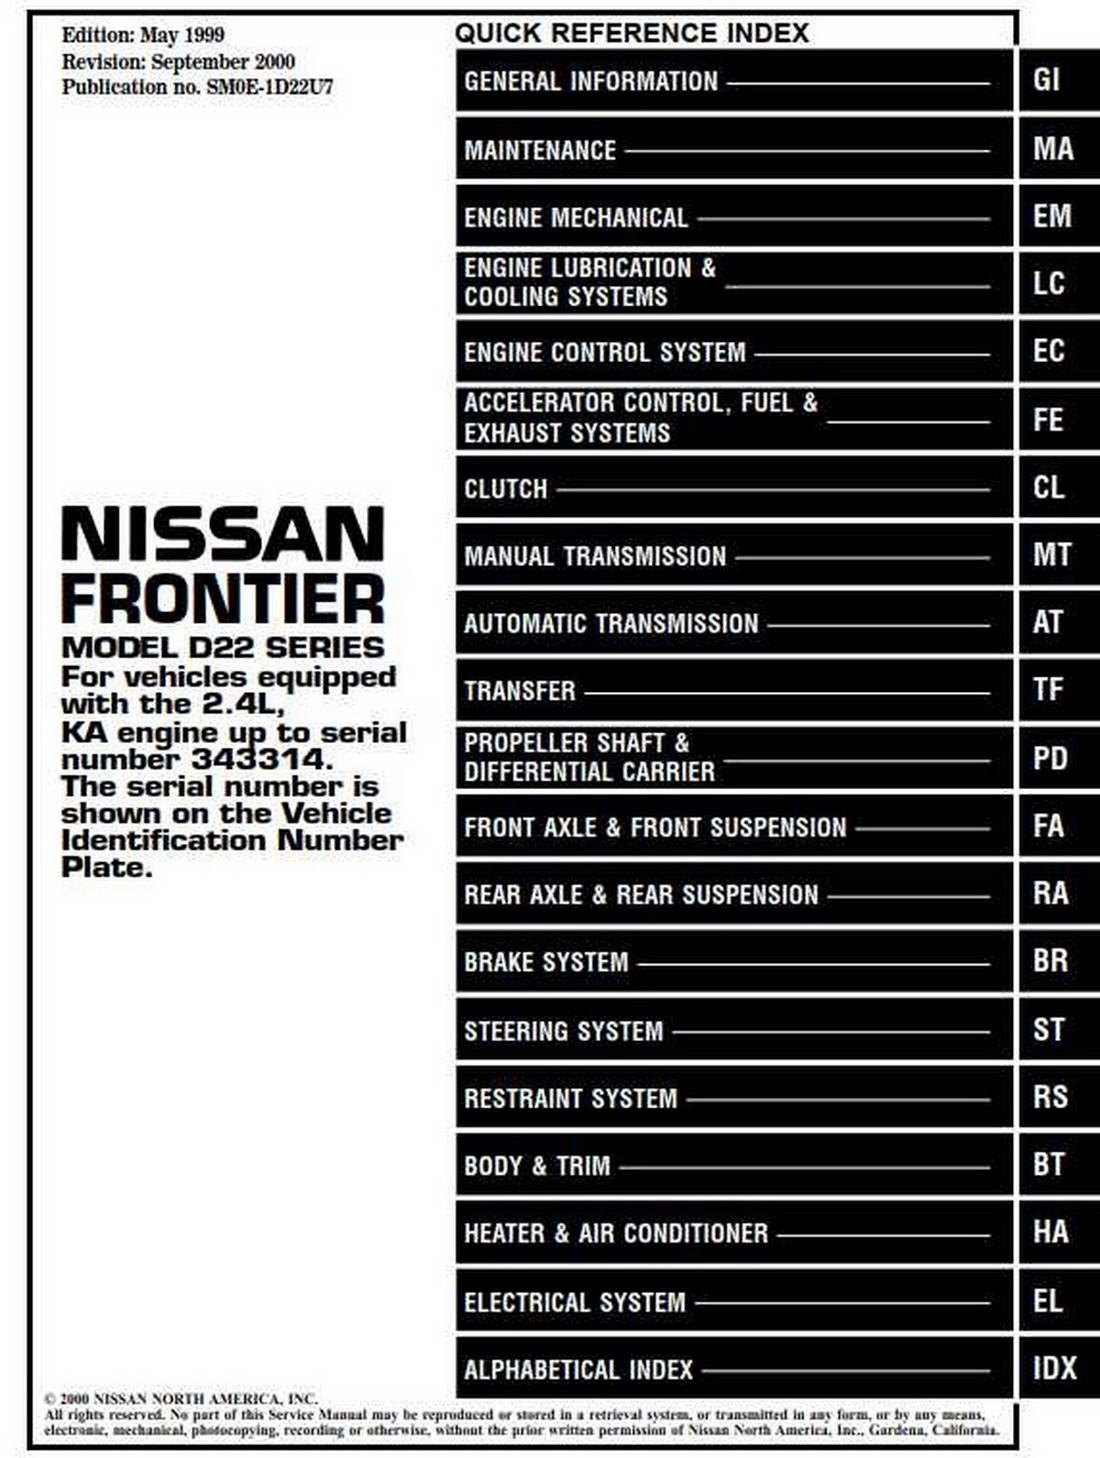 Nissan Frontier Model D22 Series 2000, Nissan Frontier Wiring Diagram 2000